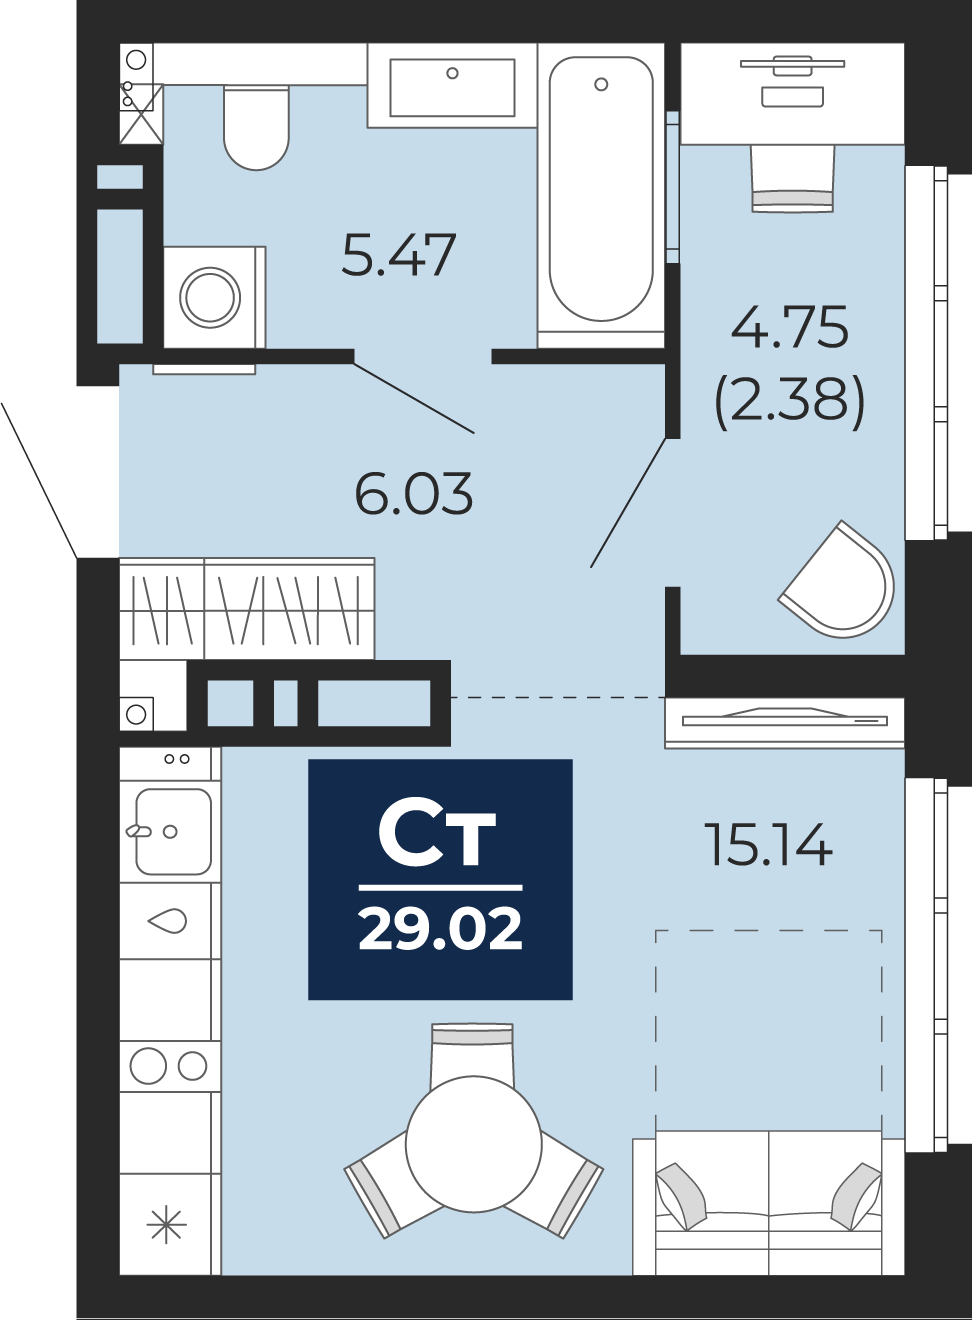 Квартира № 382, Студия, 29.02 кв. м, 13 этаж